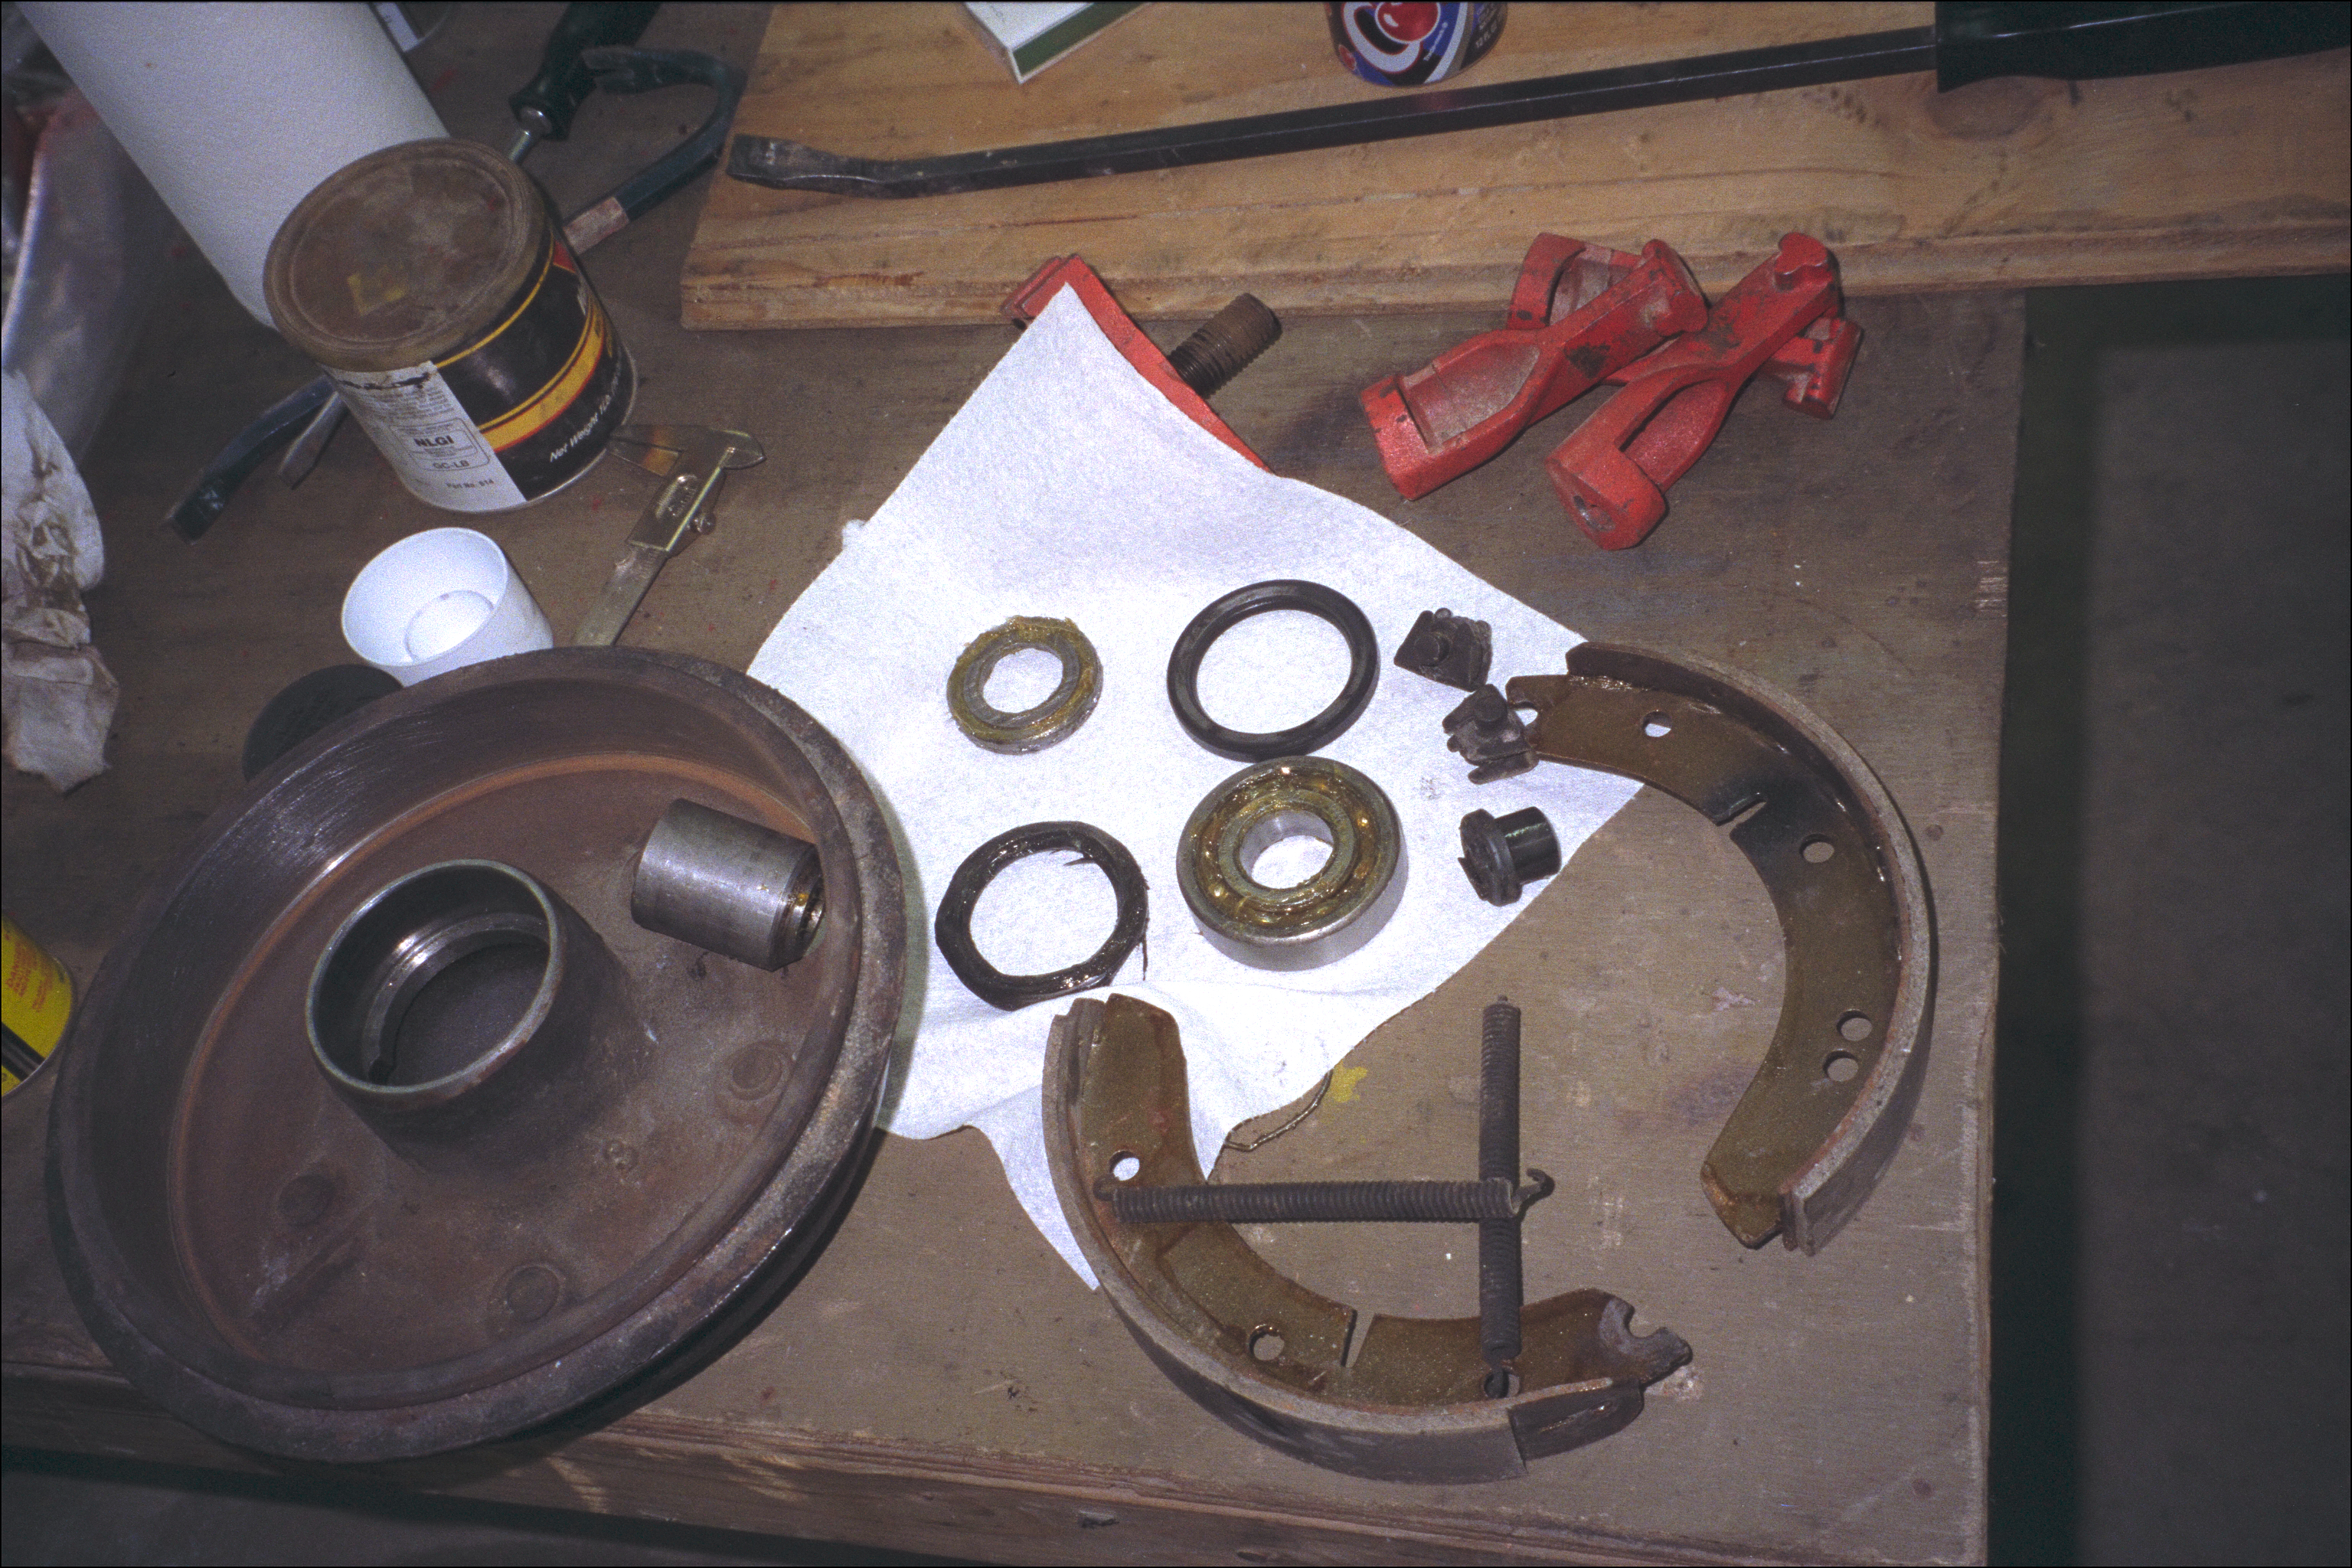 Wheels and brake parts